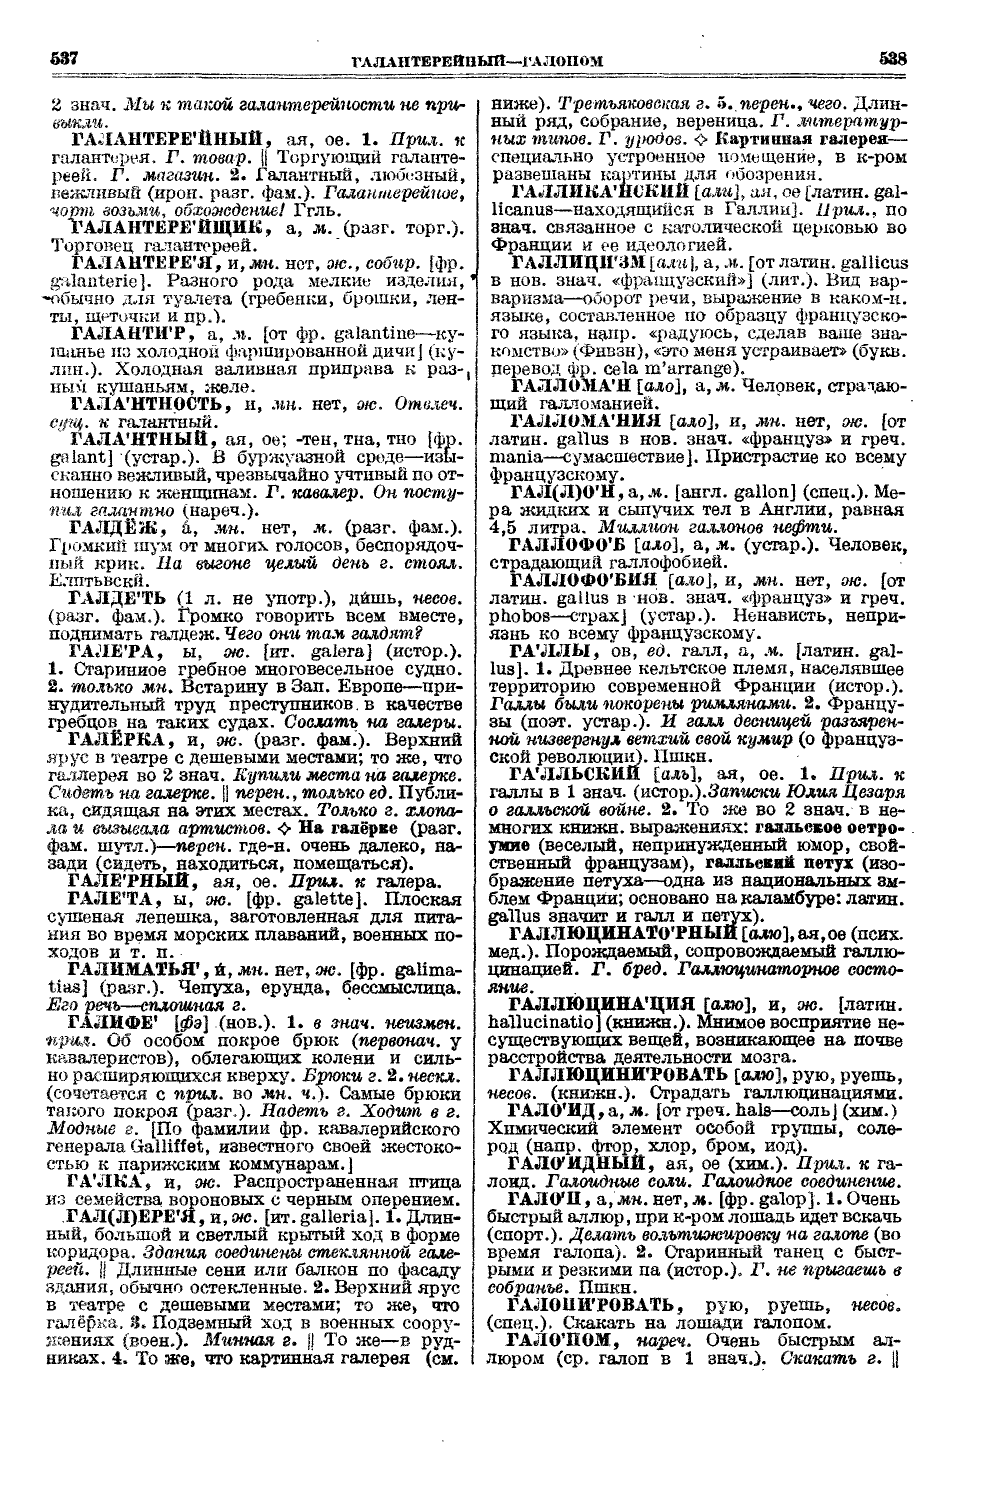 Фотокопия pdf / скан страницы 307 толкового словаря Ушакова (том 1)